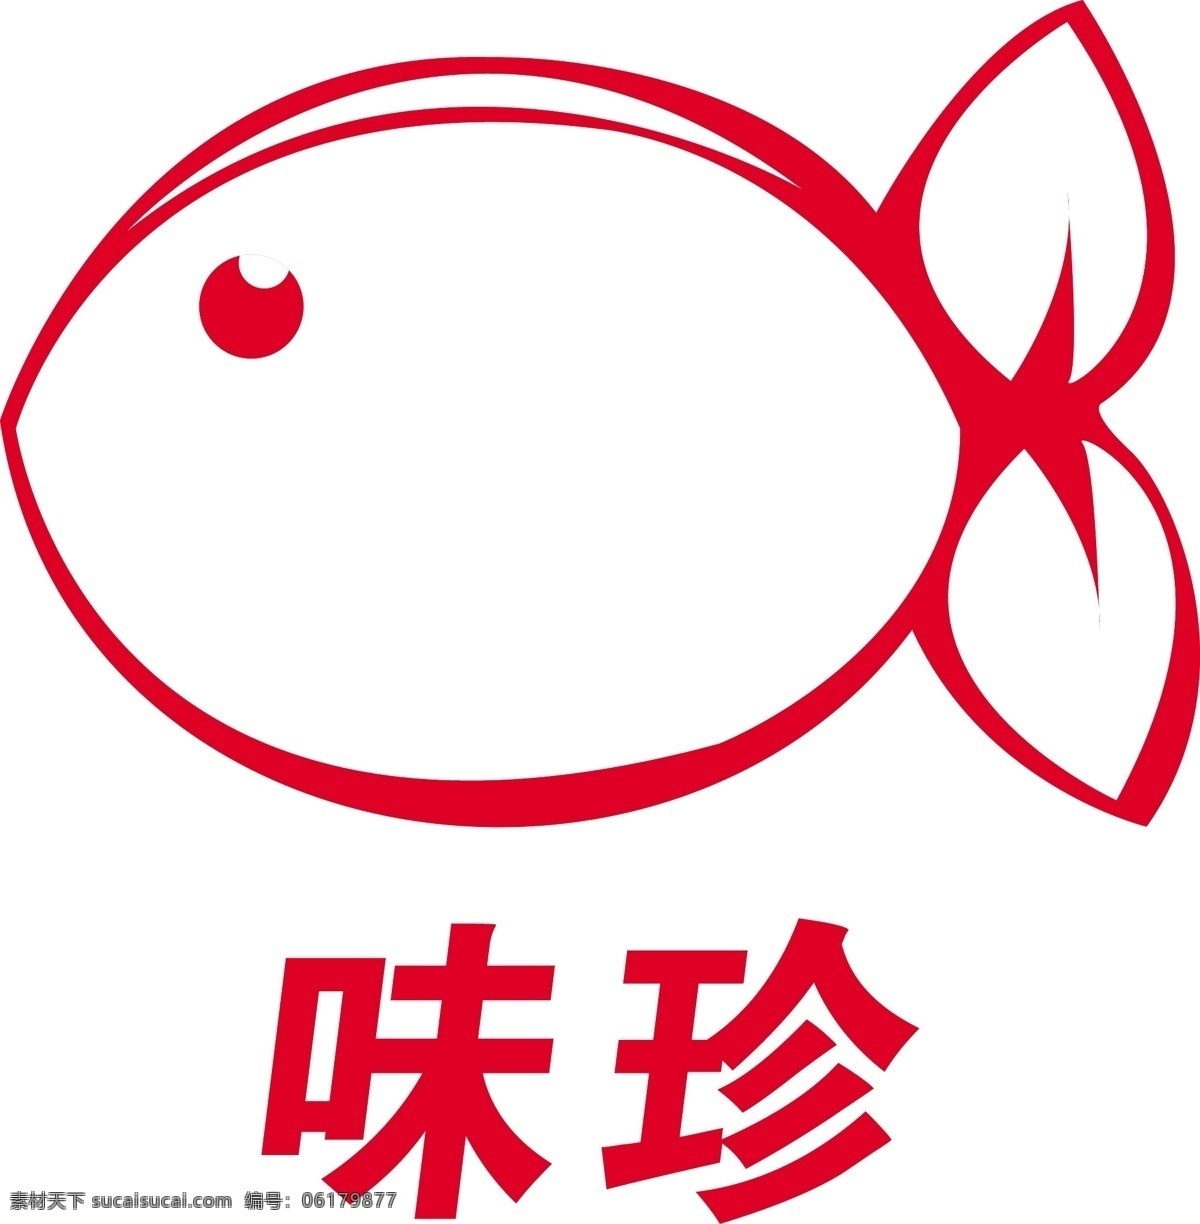 味珍酸菜鱼 动漫鱼 卡通鱼 味珍 可爱鱼 标志图标 其他图标